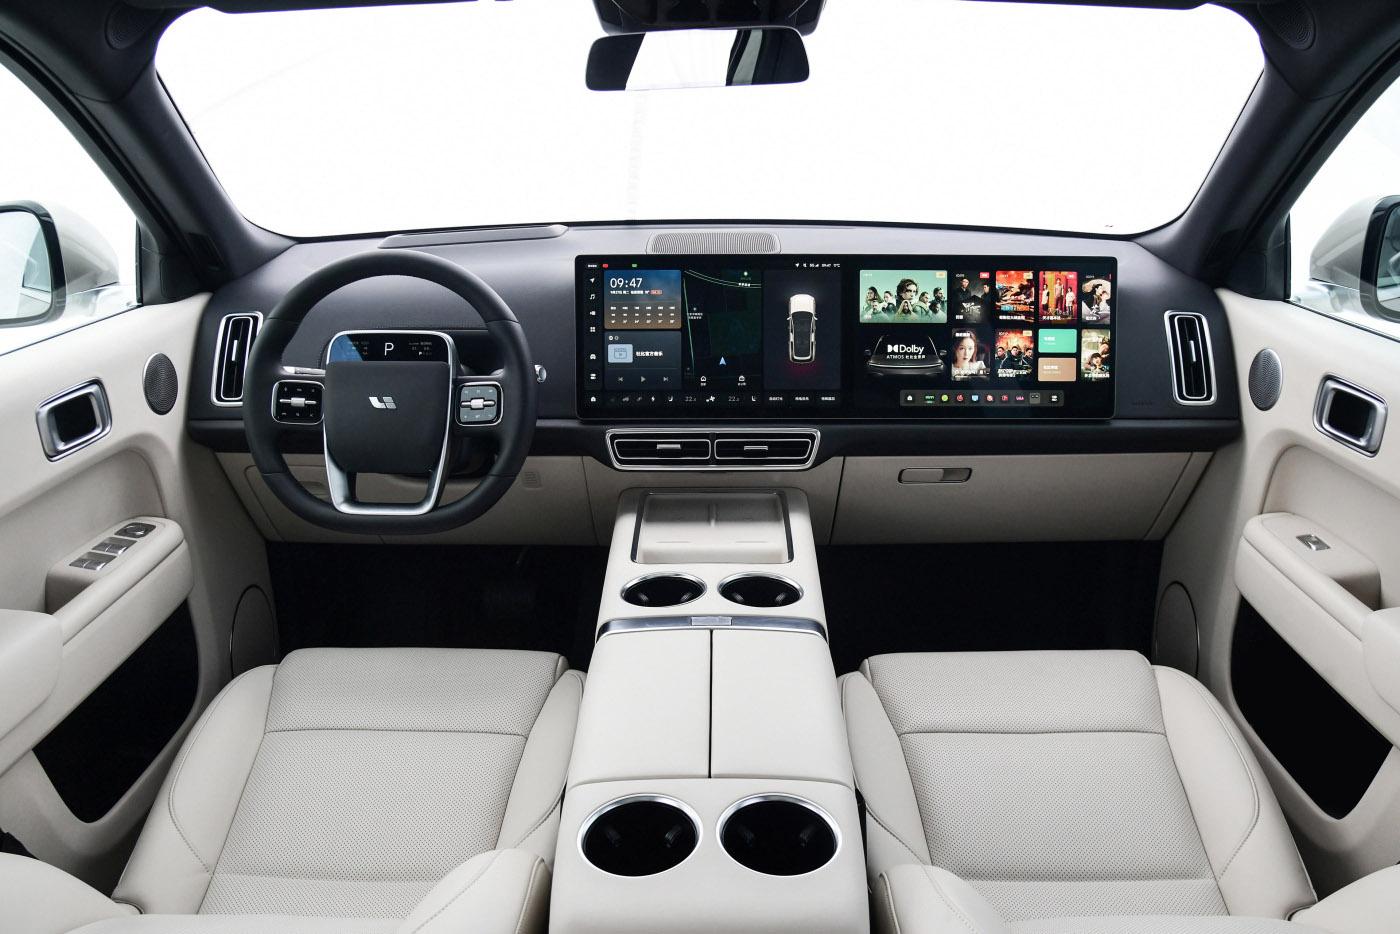 内饰方面车辆依旧延续了理想l9的布局,两款大尺寸中控屏,和hud的虚拟